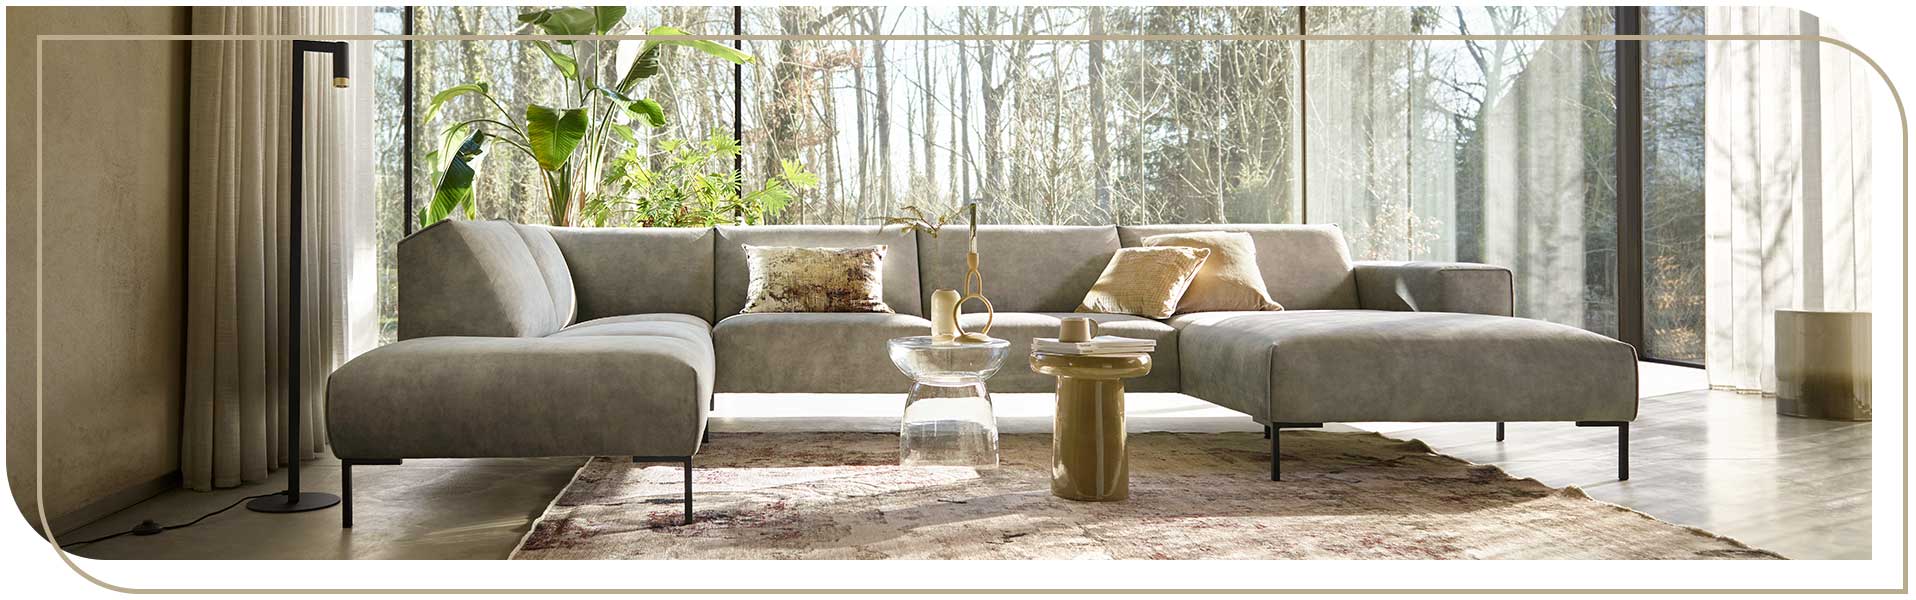 Rijp Nebu Kip Een luxe en warm interieur met velvet meubels